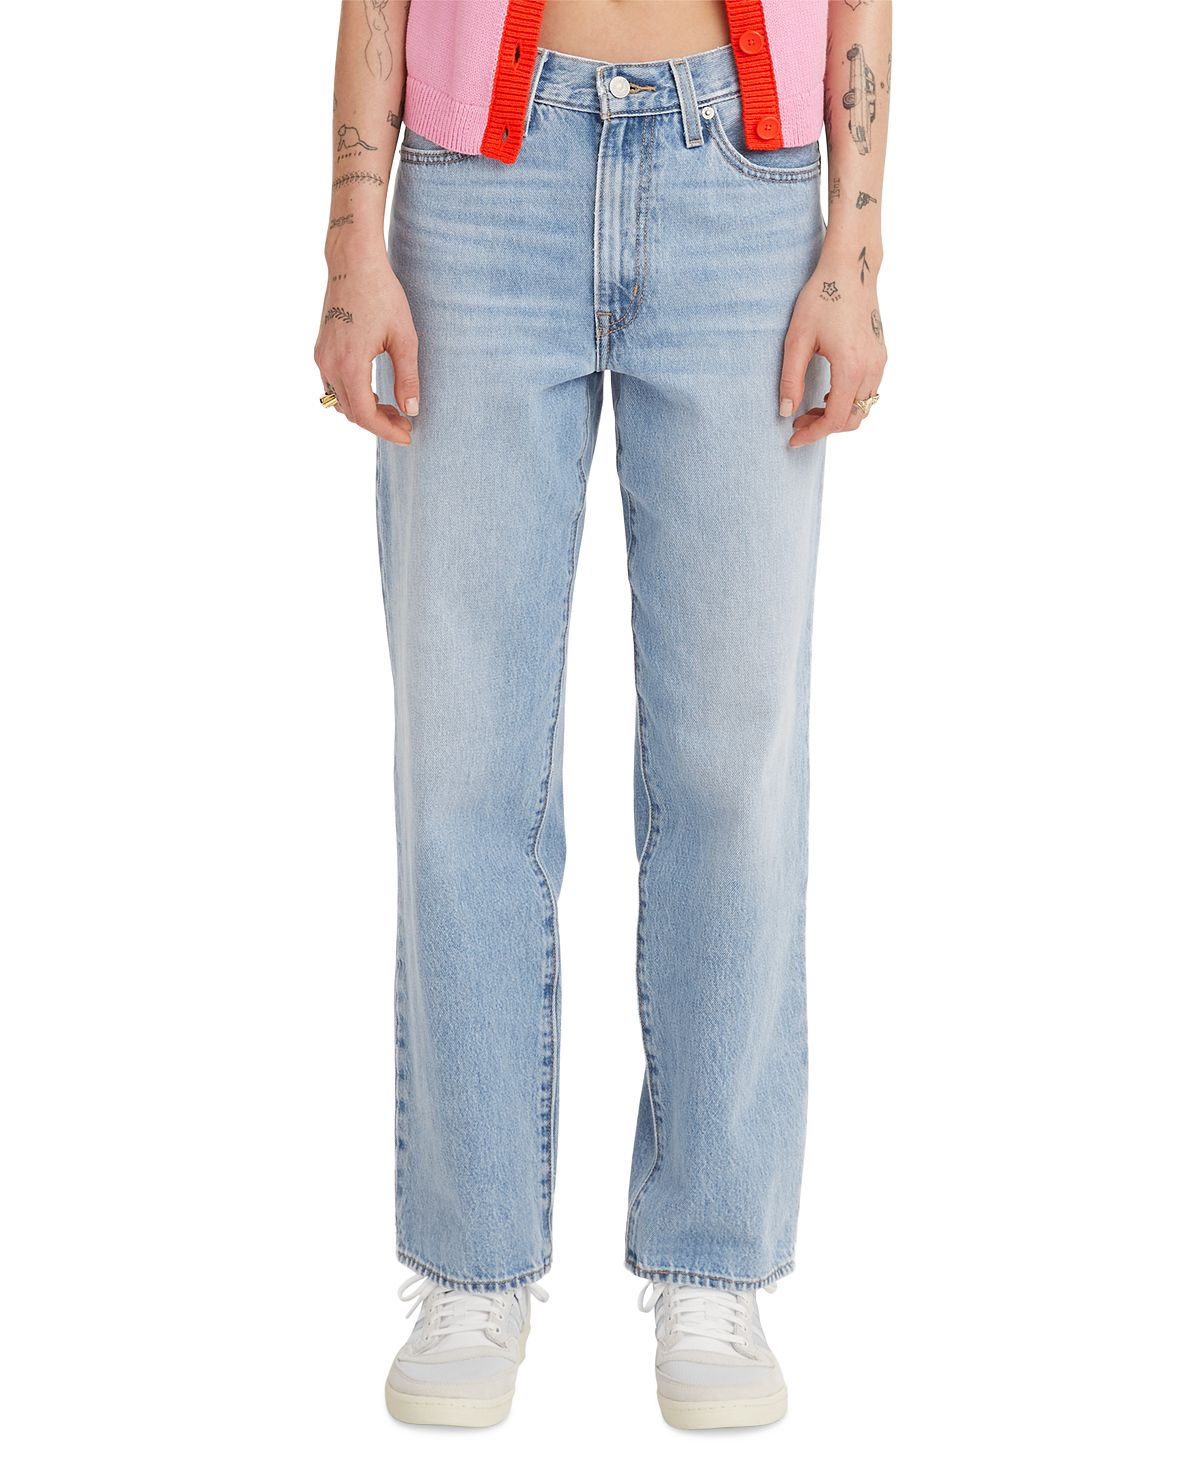 Женские мешковатые джинсы 94 Levi's цена и фото